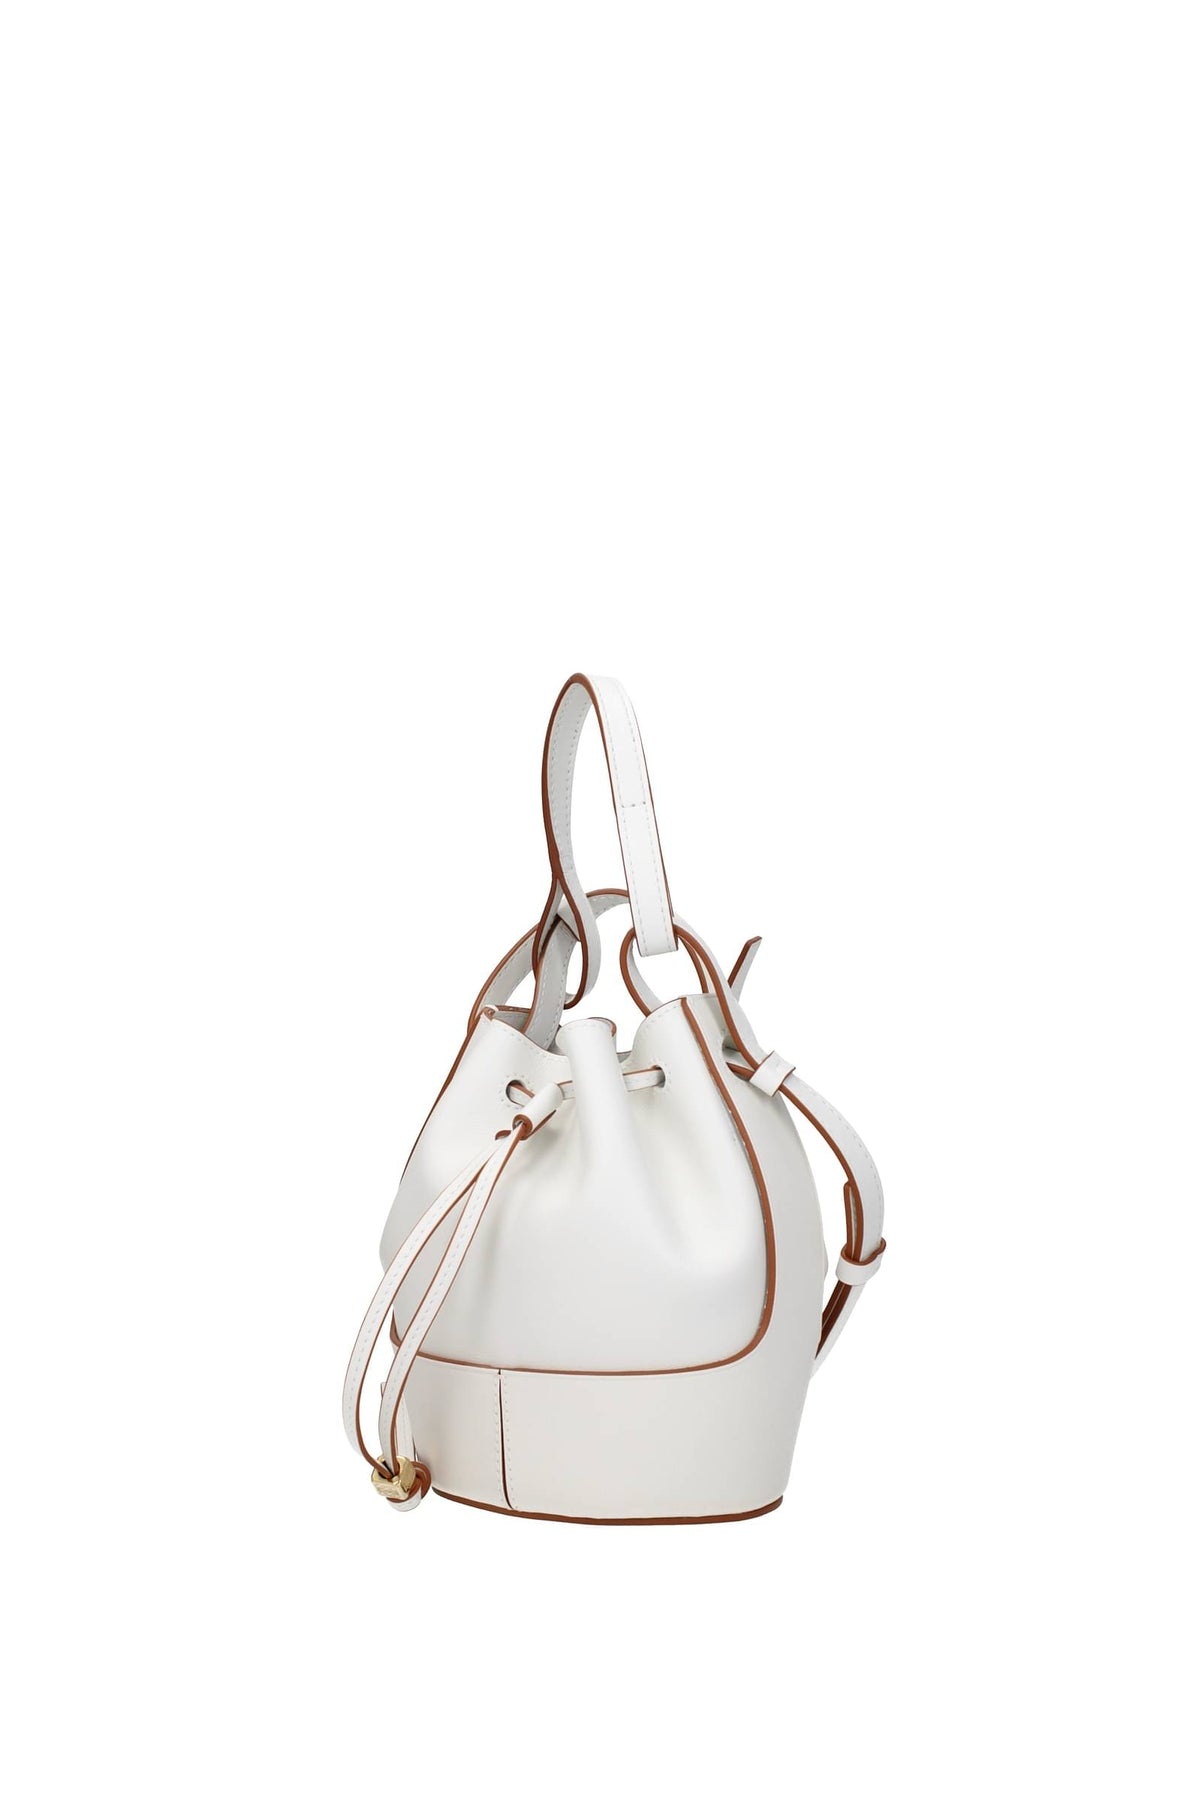 Loewe Balloon Mini Bag in Soft White